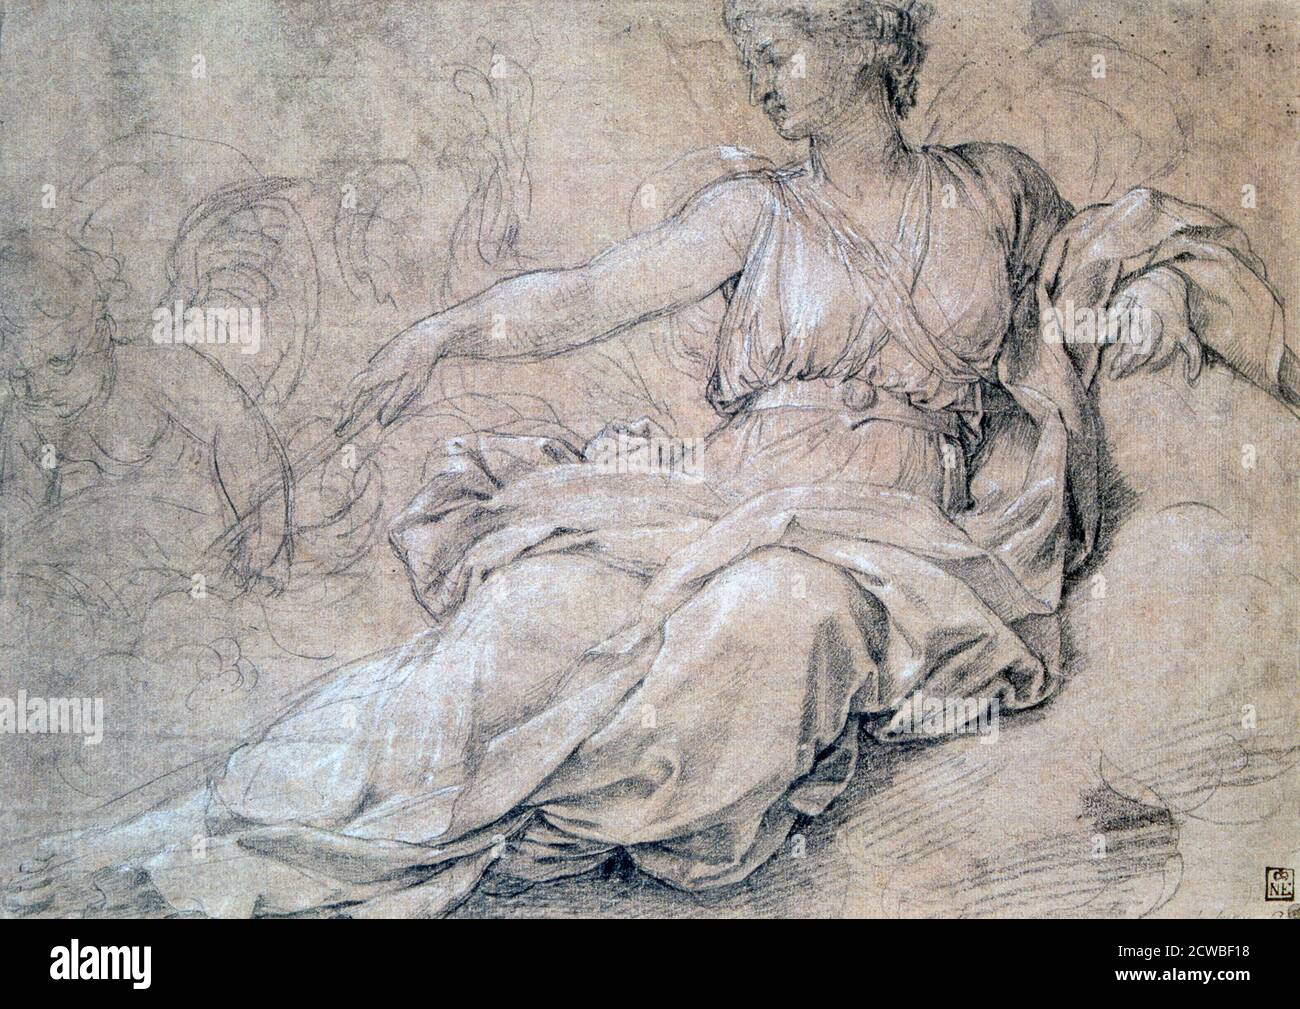 Juno e Cartagine', c1636-1655. Artista: Eustache le Sueur. Eustache le Sueur (1616-1655) è stato un artista francese e uno dei fondatori dell'Accademia francese di pittura. È conosciuto soprattutto per i suoi dipinti di soggetti religiosi. Foto Stock